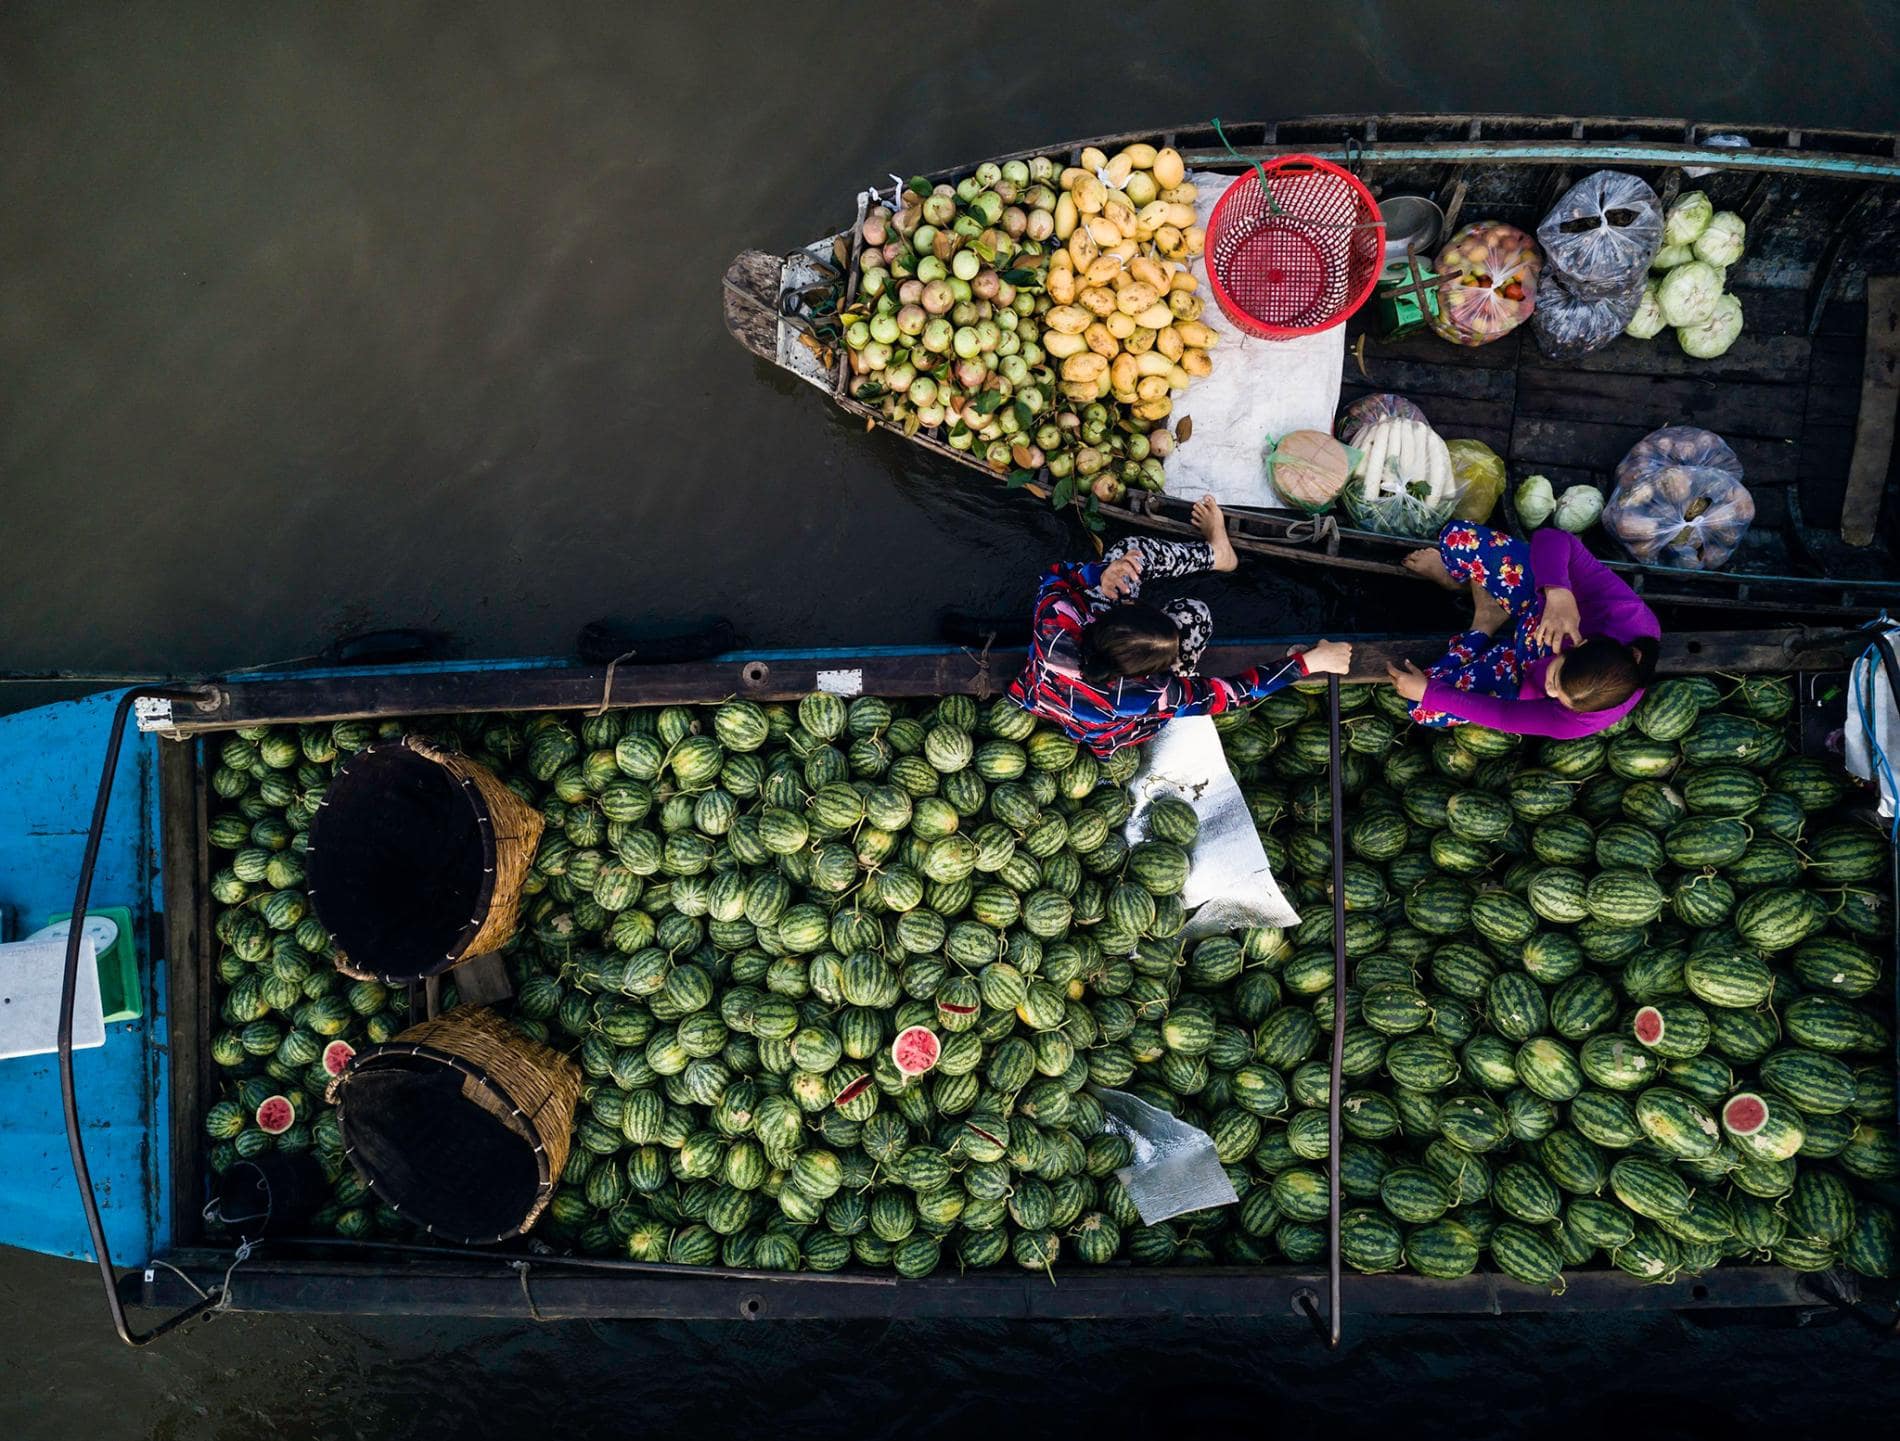 phong dien floating market in Vietnam